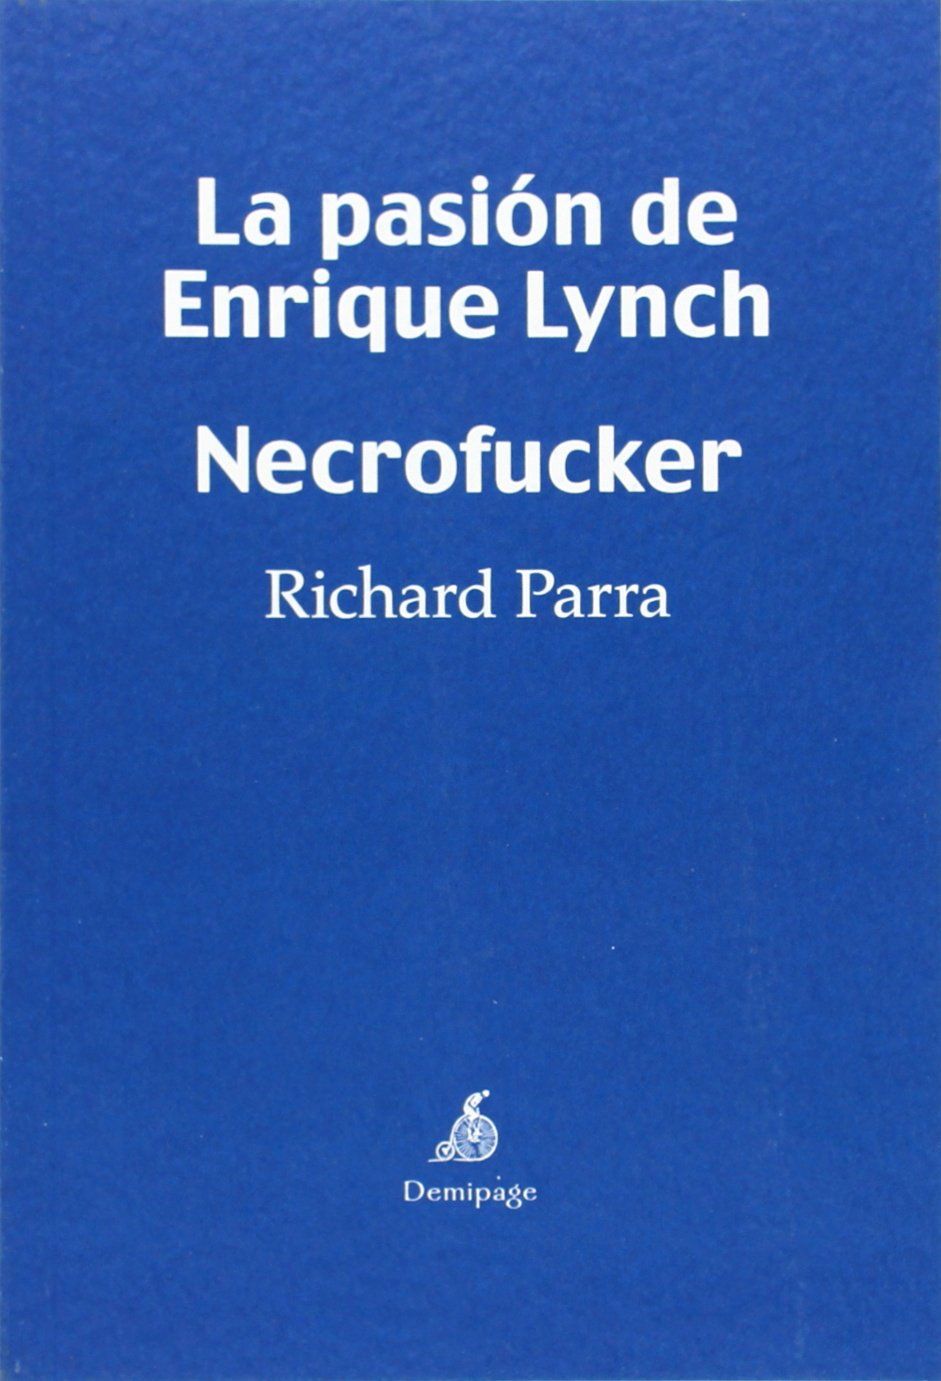 LA PASIÓN DE ENRIQUE LYNCH. NECROFUCKER. + NECROFUCKER